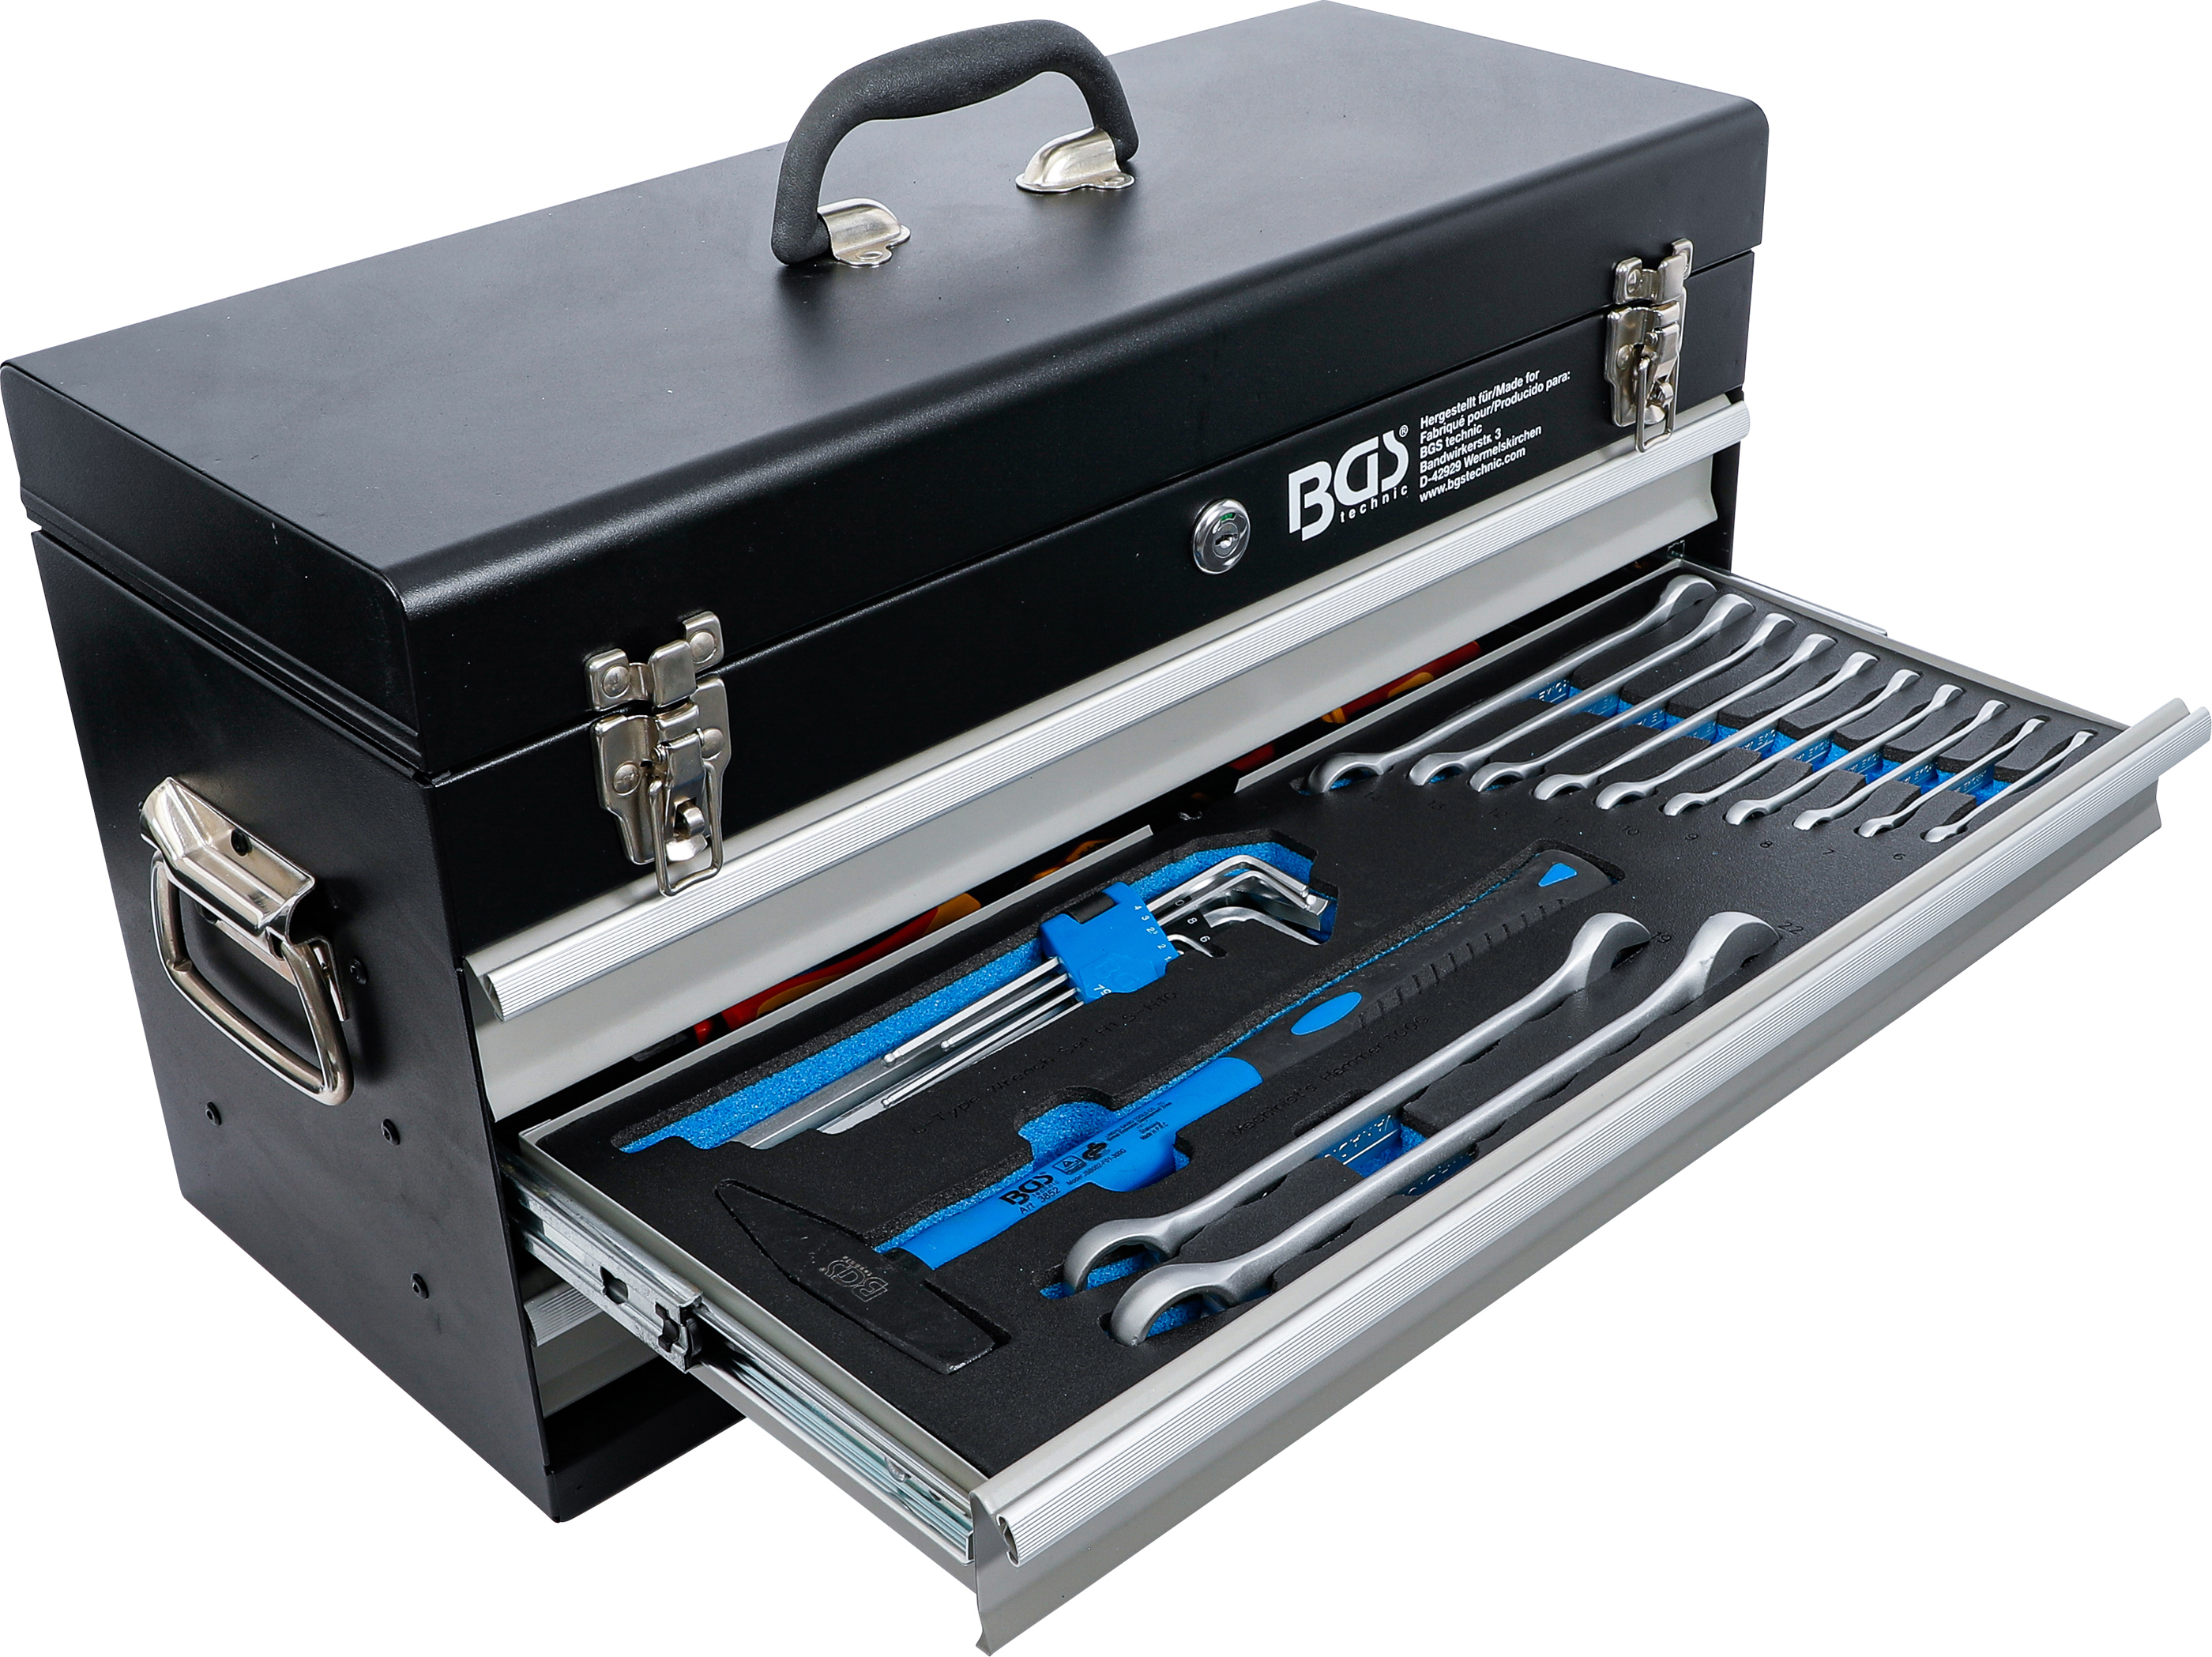 BGS Elektriker-Metall-Werkzeugkoffer | 3 Schubladen | mit 147 Werkzeugen